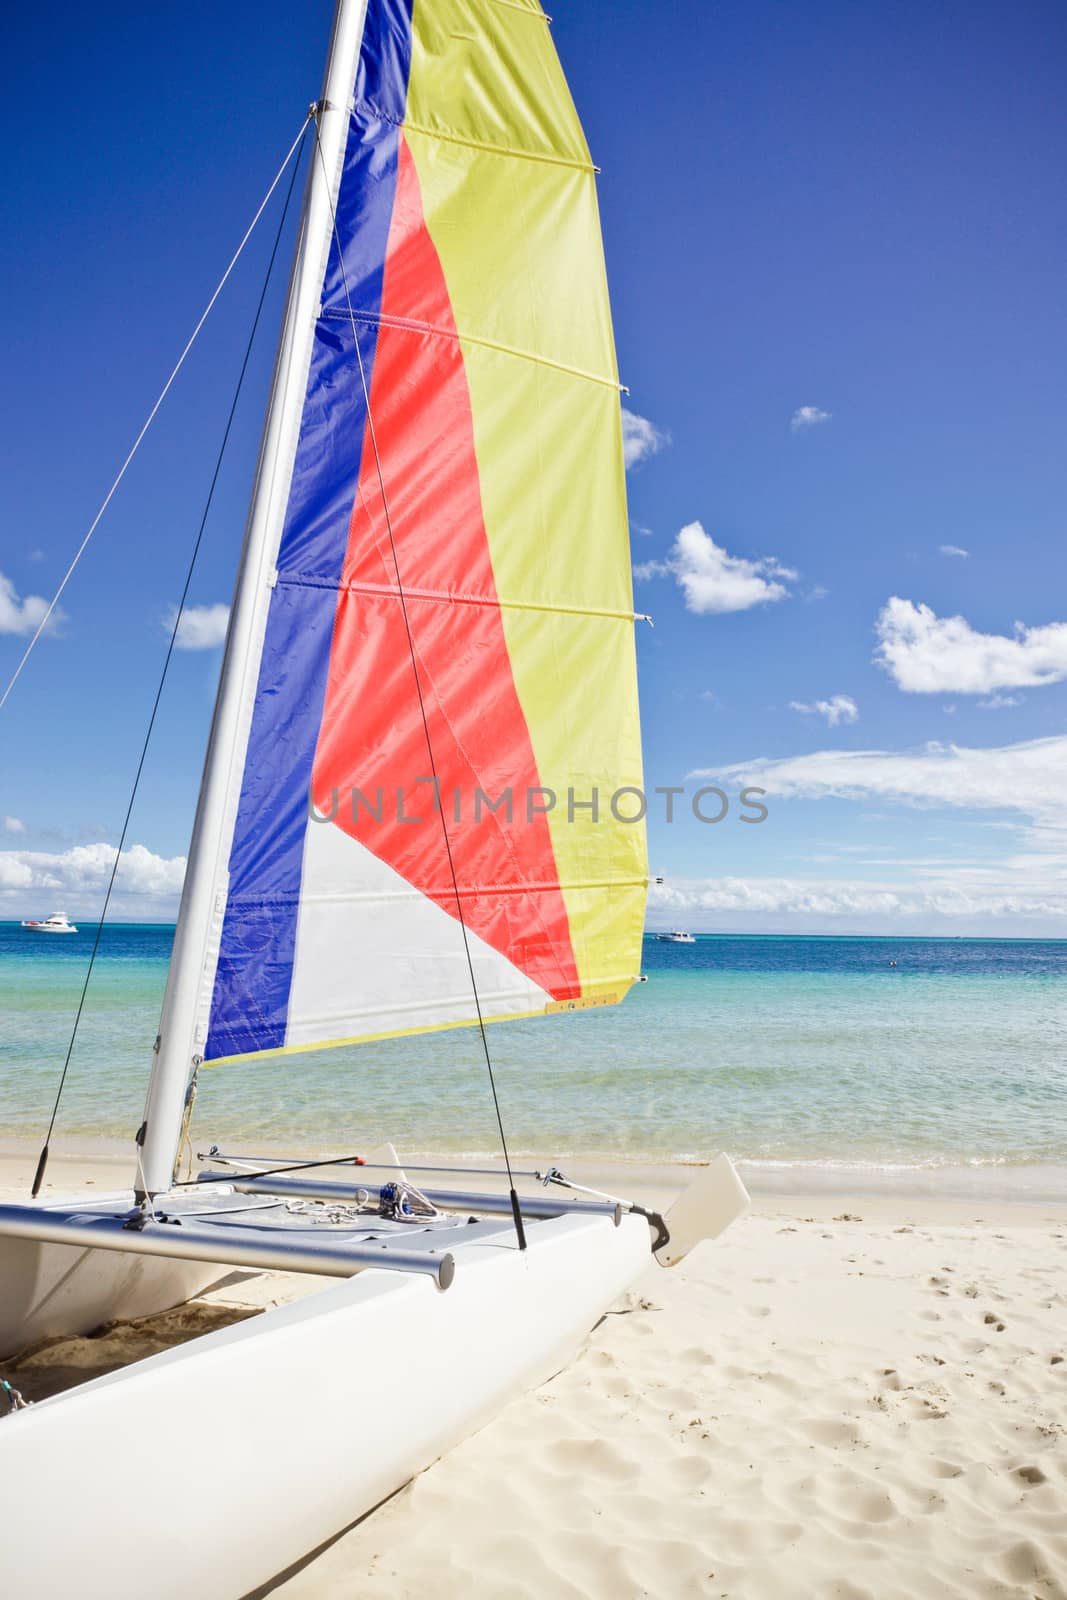 Small sailing catamaran with a colourful striped sail beached on a sandy tropical beach